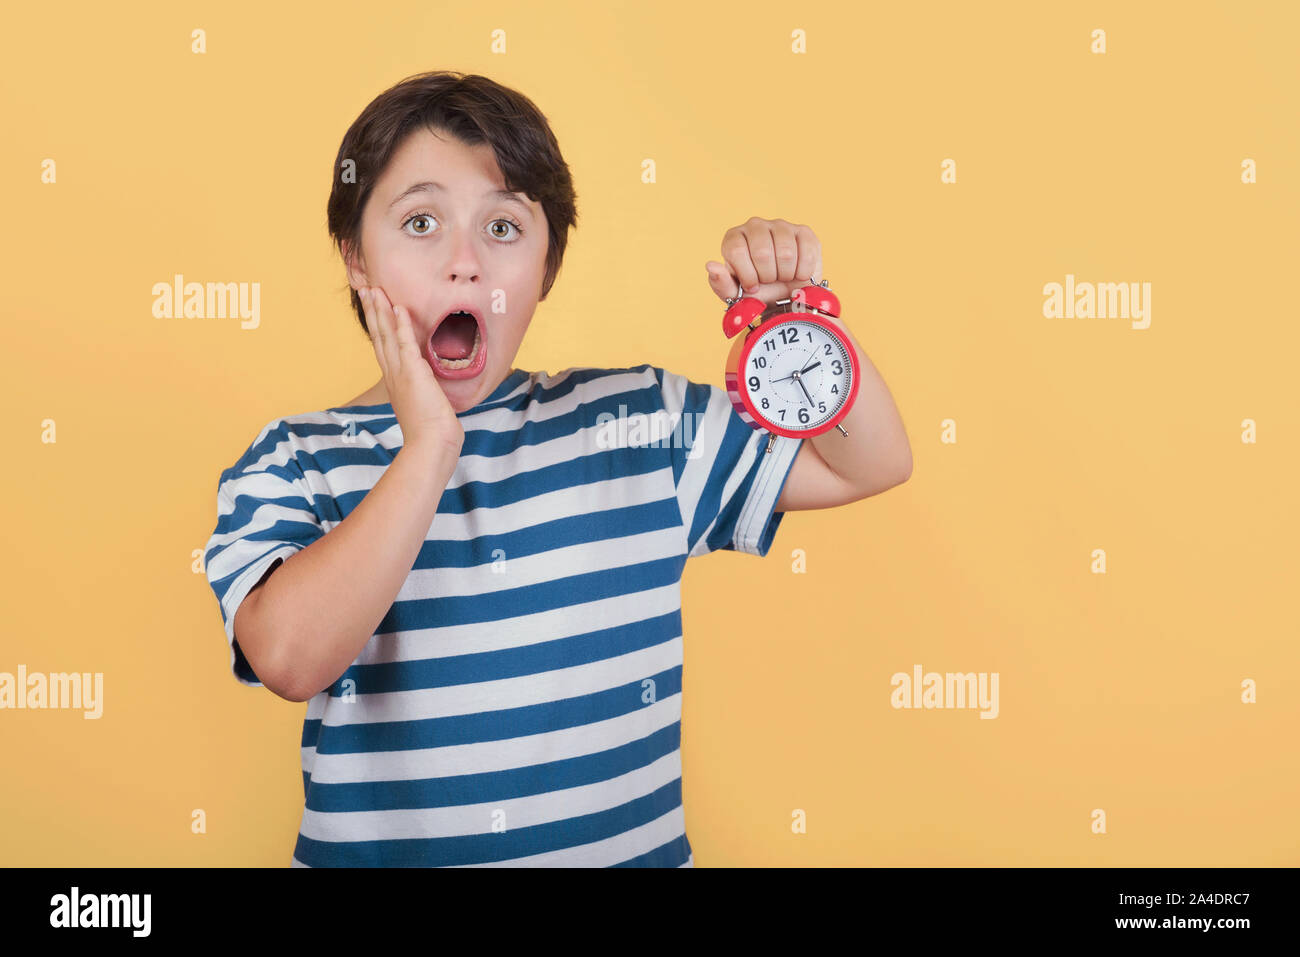 Shocked child holding alarm clock on yellow background Stock Photo